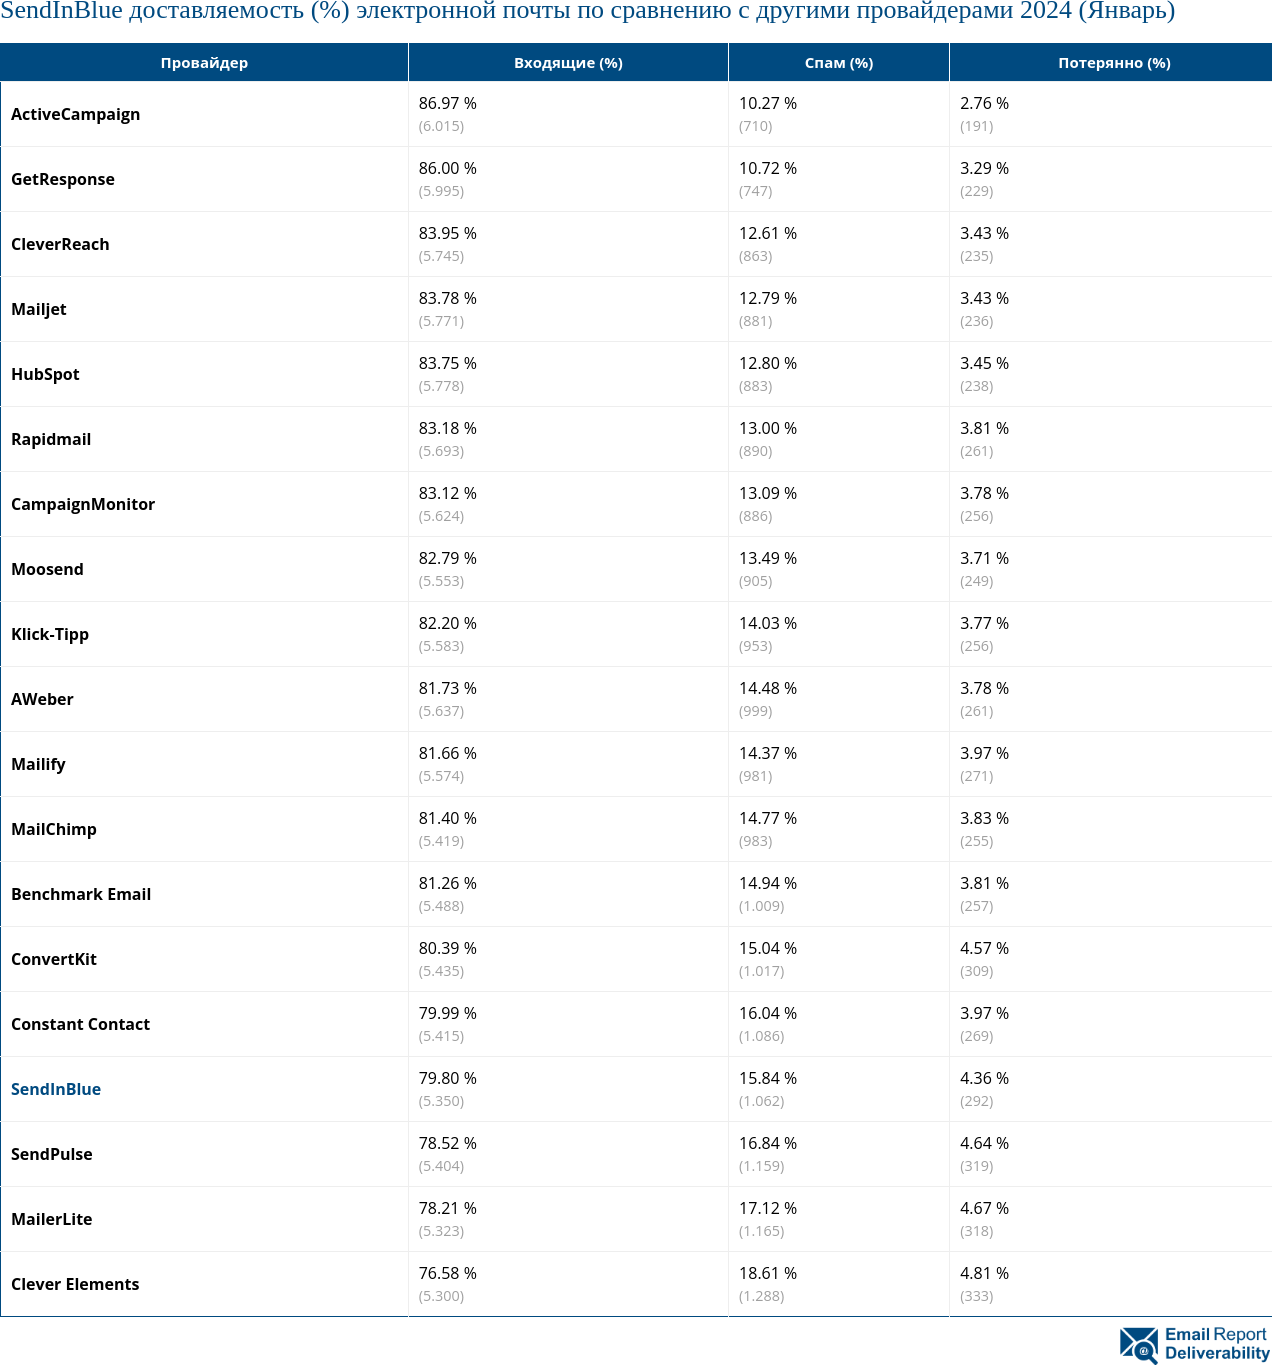 SendInBlue доставляемость (%) электронной почты по сравнению с другими провайдерами 2024 (Январь)